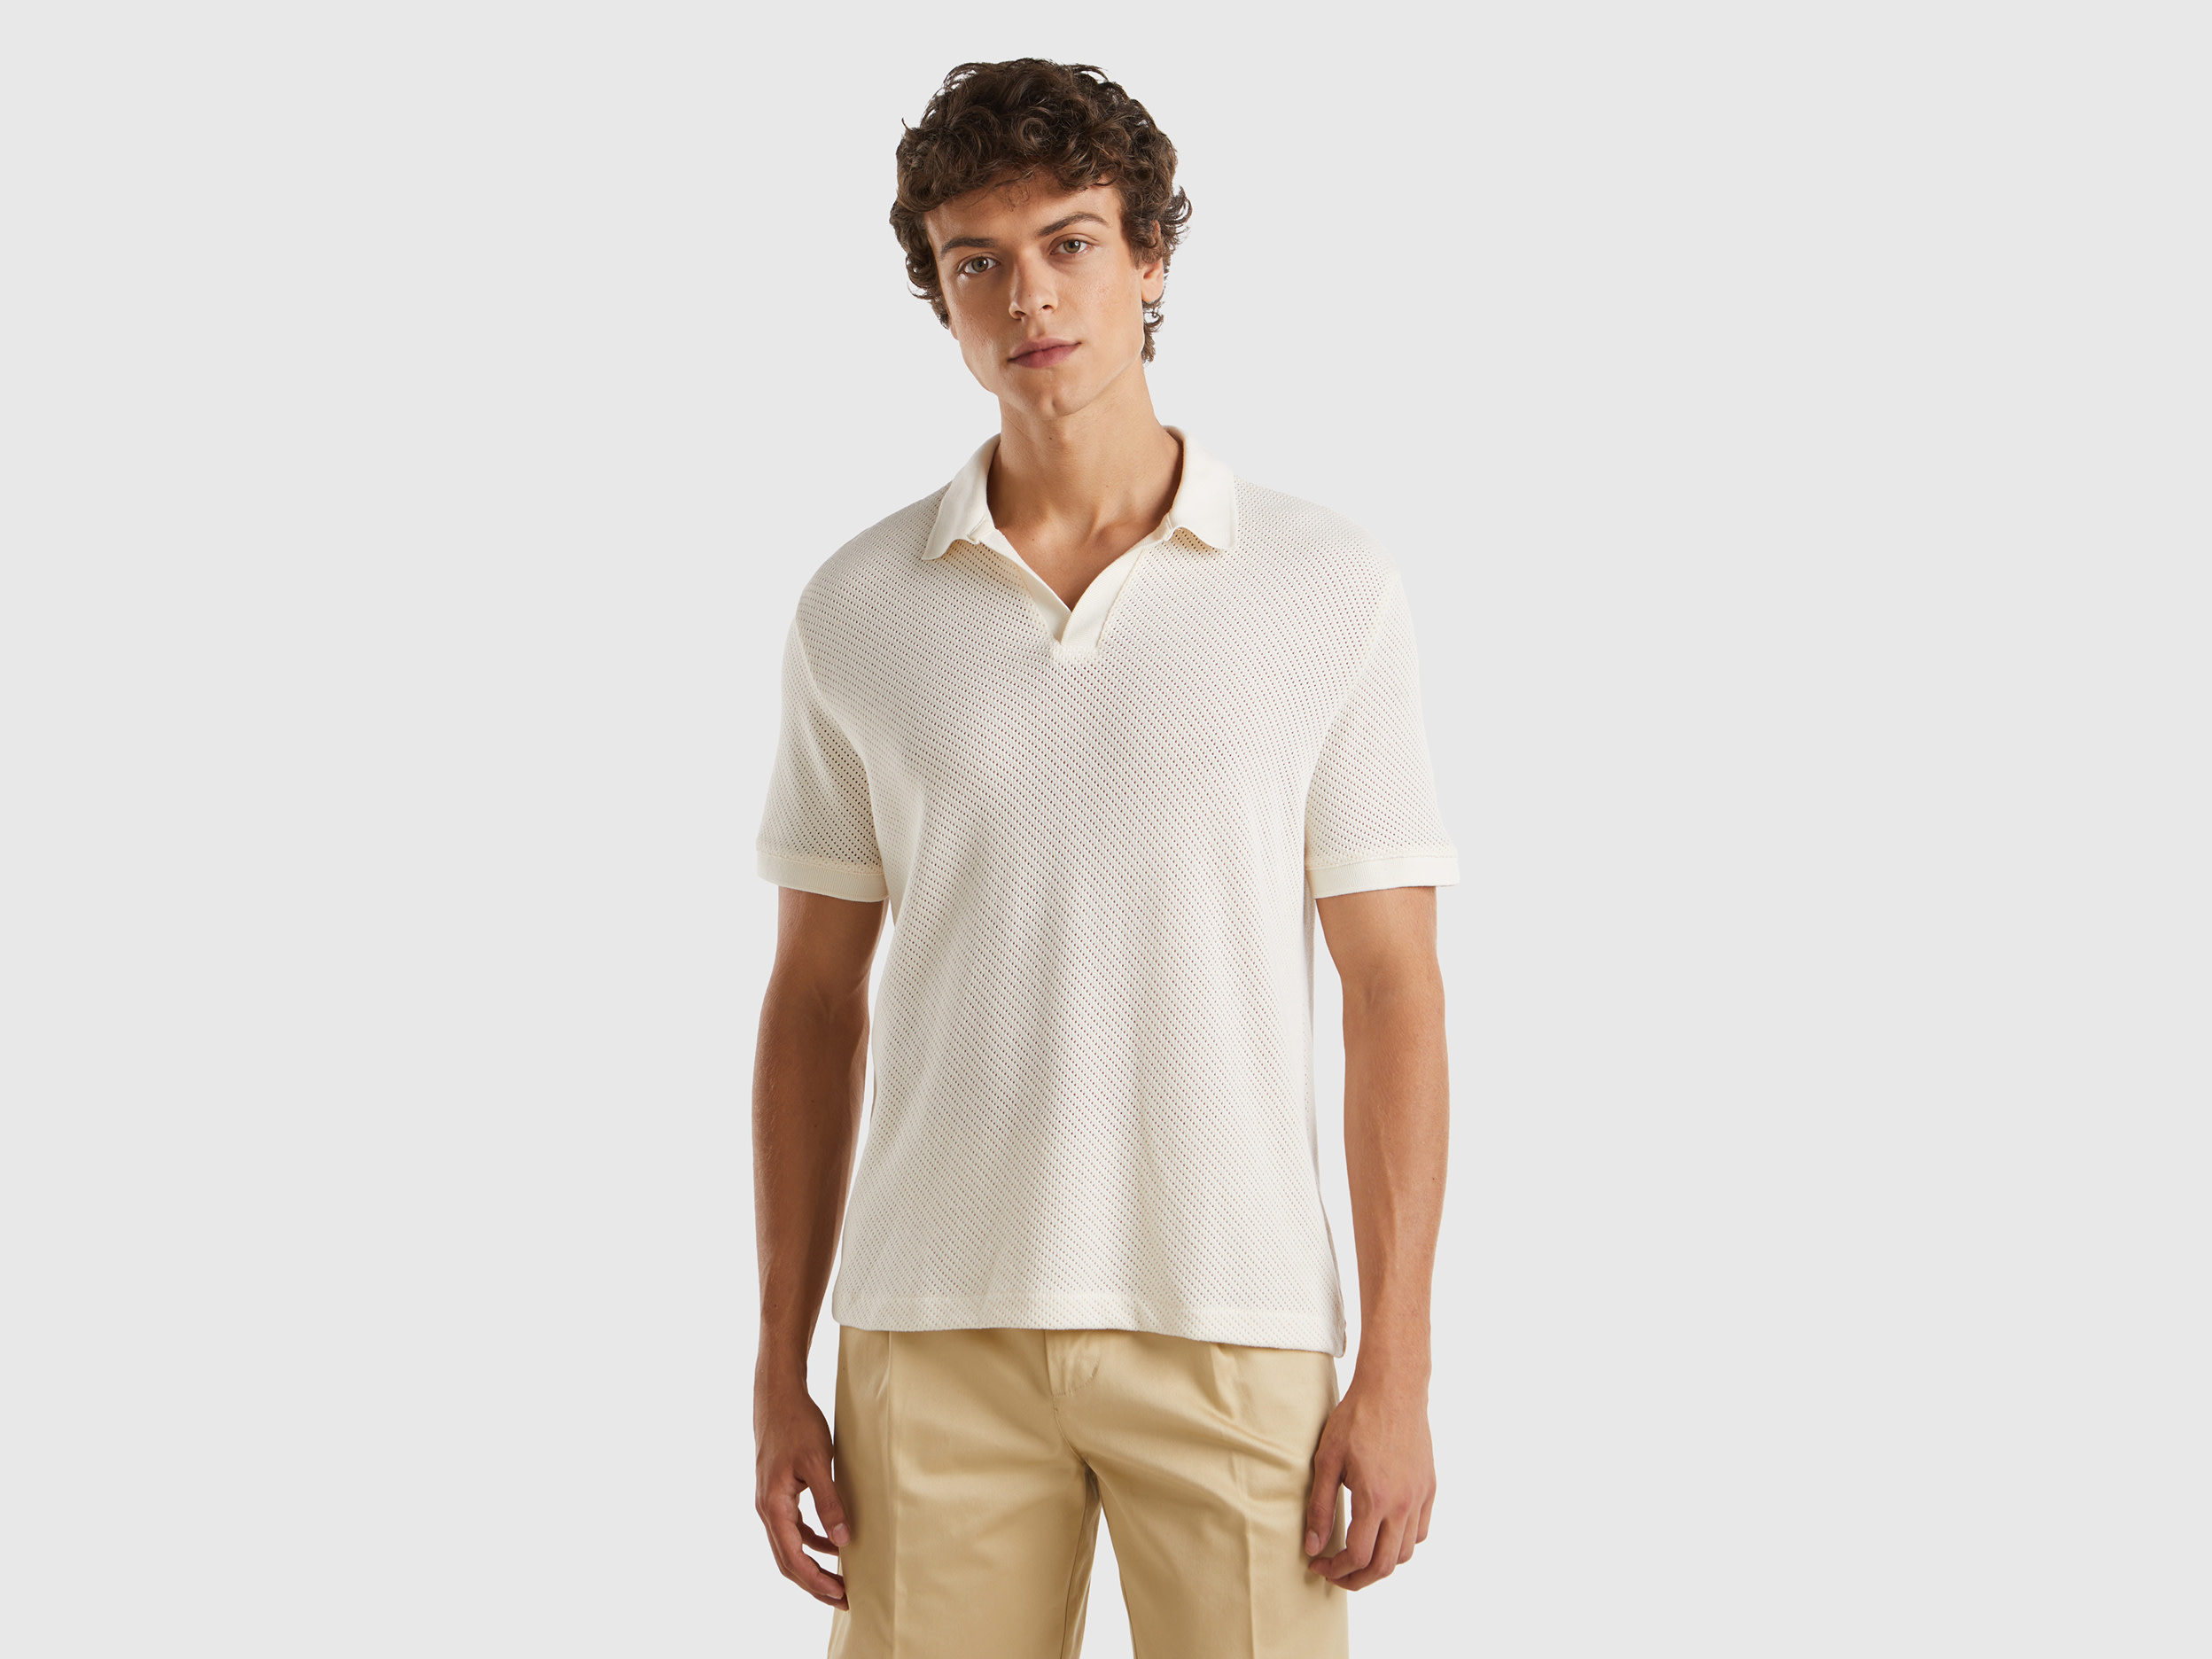 Image of Benetton, Perforated Cotton Polo Shirt, size XXXL, Creamy White, Men